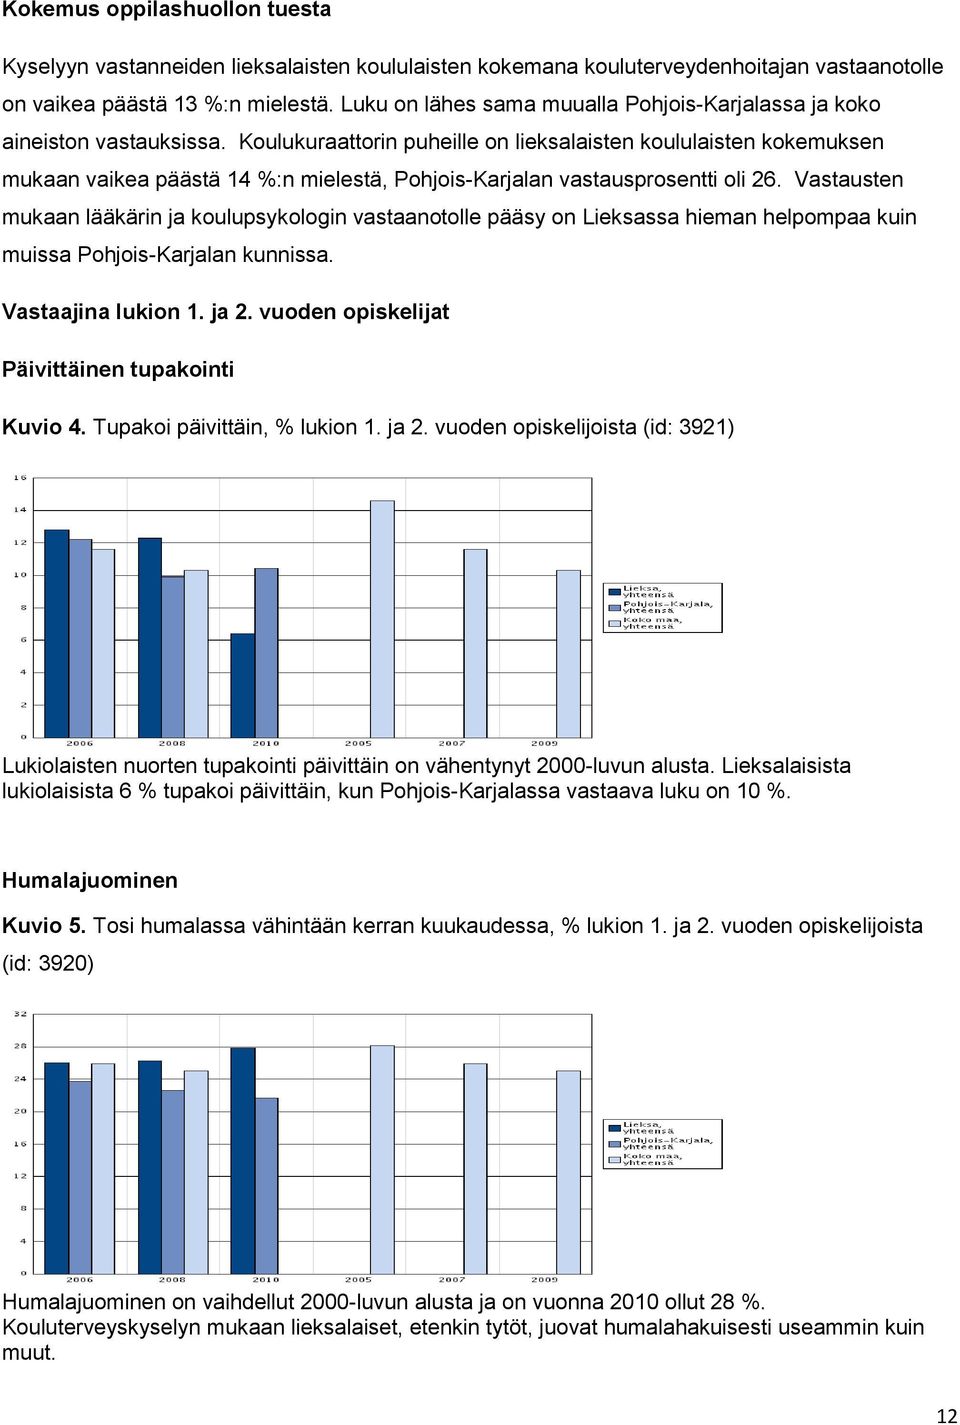 Koulukuraattorin puheille on lieksalaisten koululaisten kokemuksen mukaan vaikea päästä 14 %:n mielestä, Pohjois-Karjalan vastausprosentti oli 26.